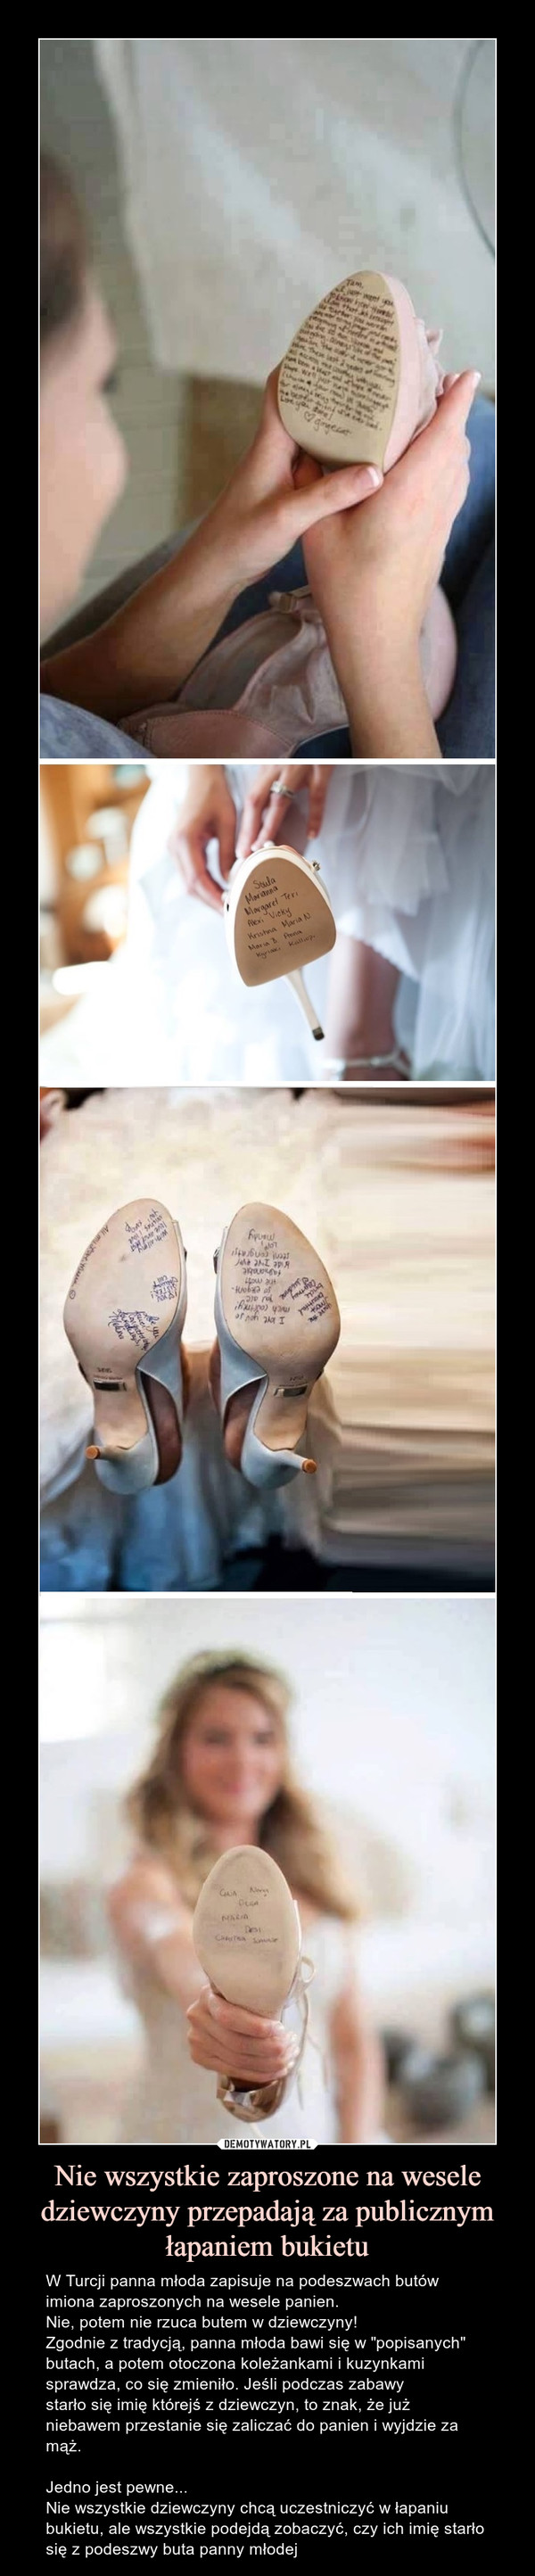 Nie wszystkie zaproszone na wesele dziewczyny przepadają za publicznym łapaniem bukietu – W Turcji panna młoda zapisuje na podeszwach butów imiona zaproszonych na wesele panien. Nie, potem nie rzuca butem w dziewczyny!Zgodnie z tradycją, panna młoda bawi się w "popisanych" butach, a potem otoczona koleżankami i kuzynkami sprawdza, co się zmieniło. Jeśli podczas zabawy starło się imię którejś z dziewczyn, to znak, że już niebawem przestanie się zaliczać do panien i wyjdzie za mąż.Jedno jest pewne... Nie wszystkie dziewczyny chcą uczestniczyć w łapaniu bukietu, ale wszystkie podejdą zobaczyć, czy ich imię starło się z podeszwy buta panny młodej W Turcji panna młoda zapisuje na podeszwach butów imiona zaproszonych na wesele panien. Nie, potem nie rzuca butem w dziewczyny!Zgodnie z tradycją, panna młoda bawi się w "popisanych" butach, a potem otoczona koleżankami i kuzynkami sprawdza, co się zmieniło...Jeśli podczas zabawy starło się imię którejś z dziewczyn, to znak, że już niebawem przestanie się zaliczać do panien i wyjdzie za mąż.Jedno jest pewne... Nie wszystkie dziewczyny chcą uczestniczyć w łapaniu bukietu, ale wszystkie podejdą zobaczyć, czy ich imię starło się z podeszwy buta panny młodej